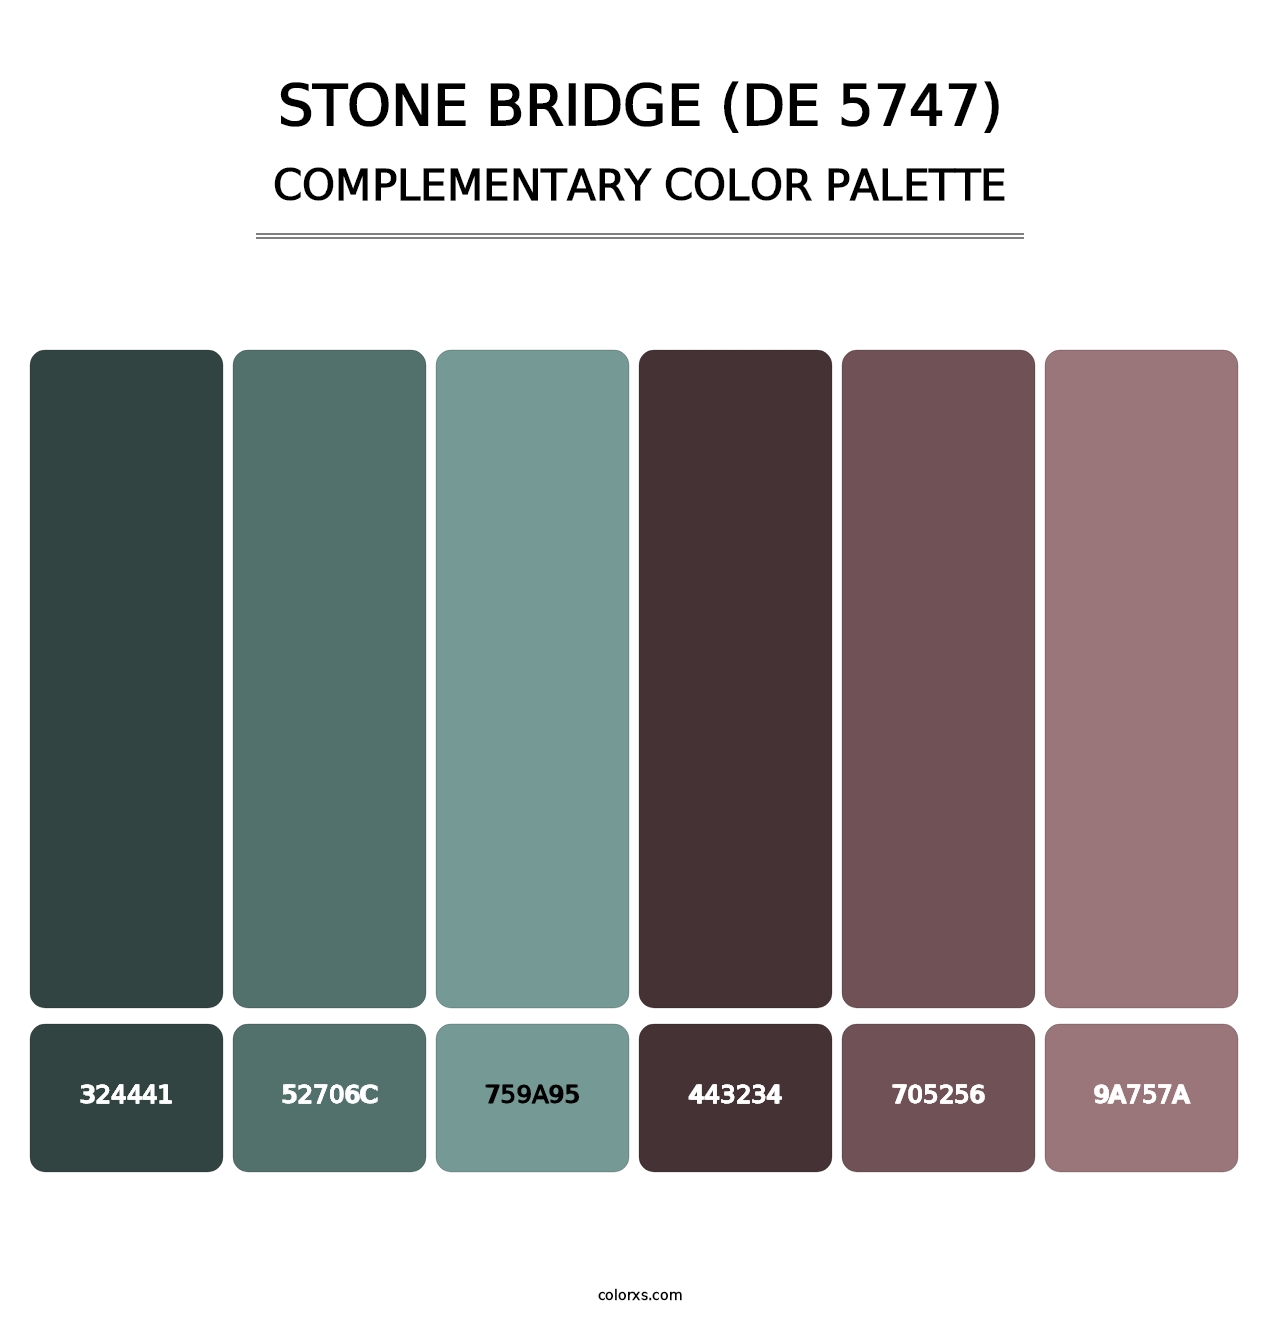 Stone Bridge (DE 5747) - Complementary Color Palette